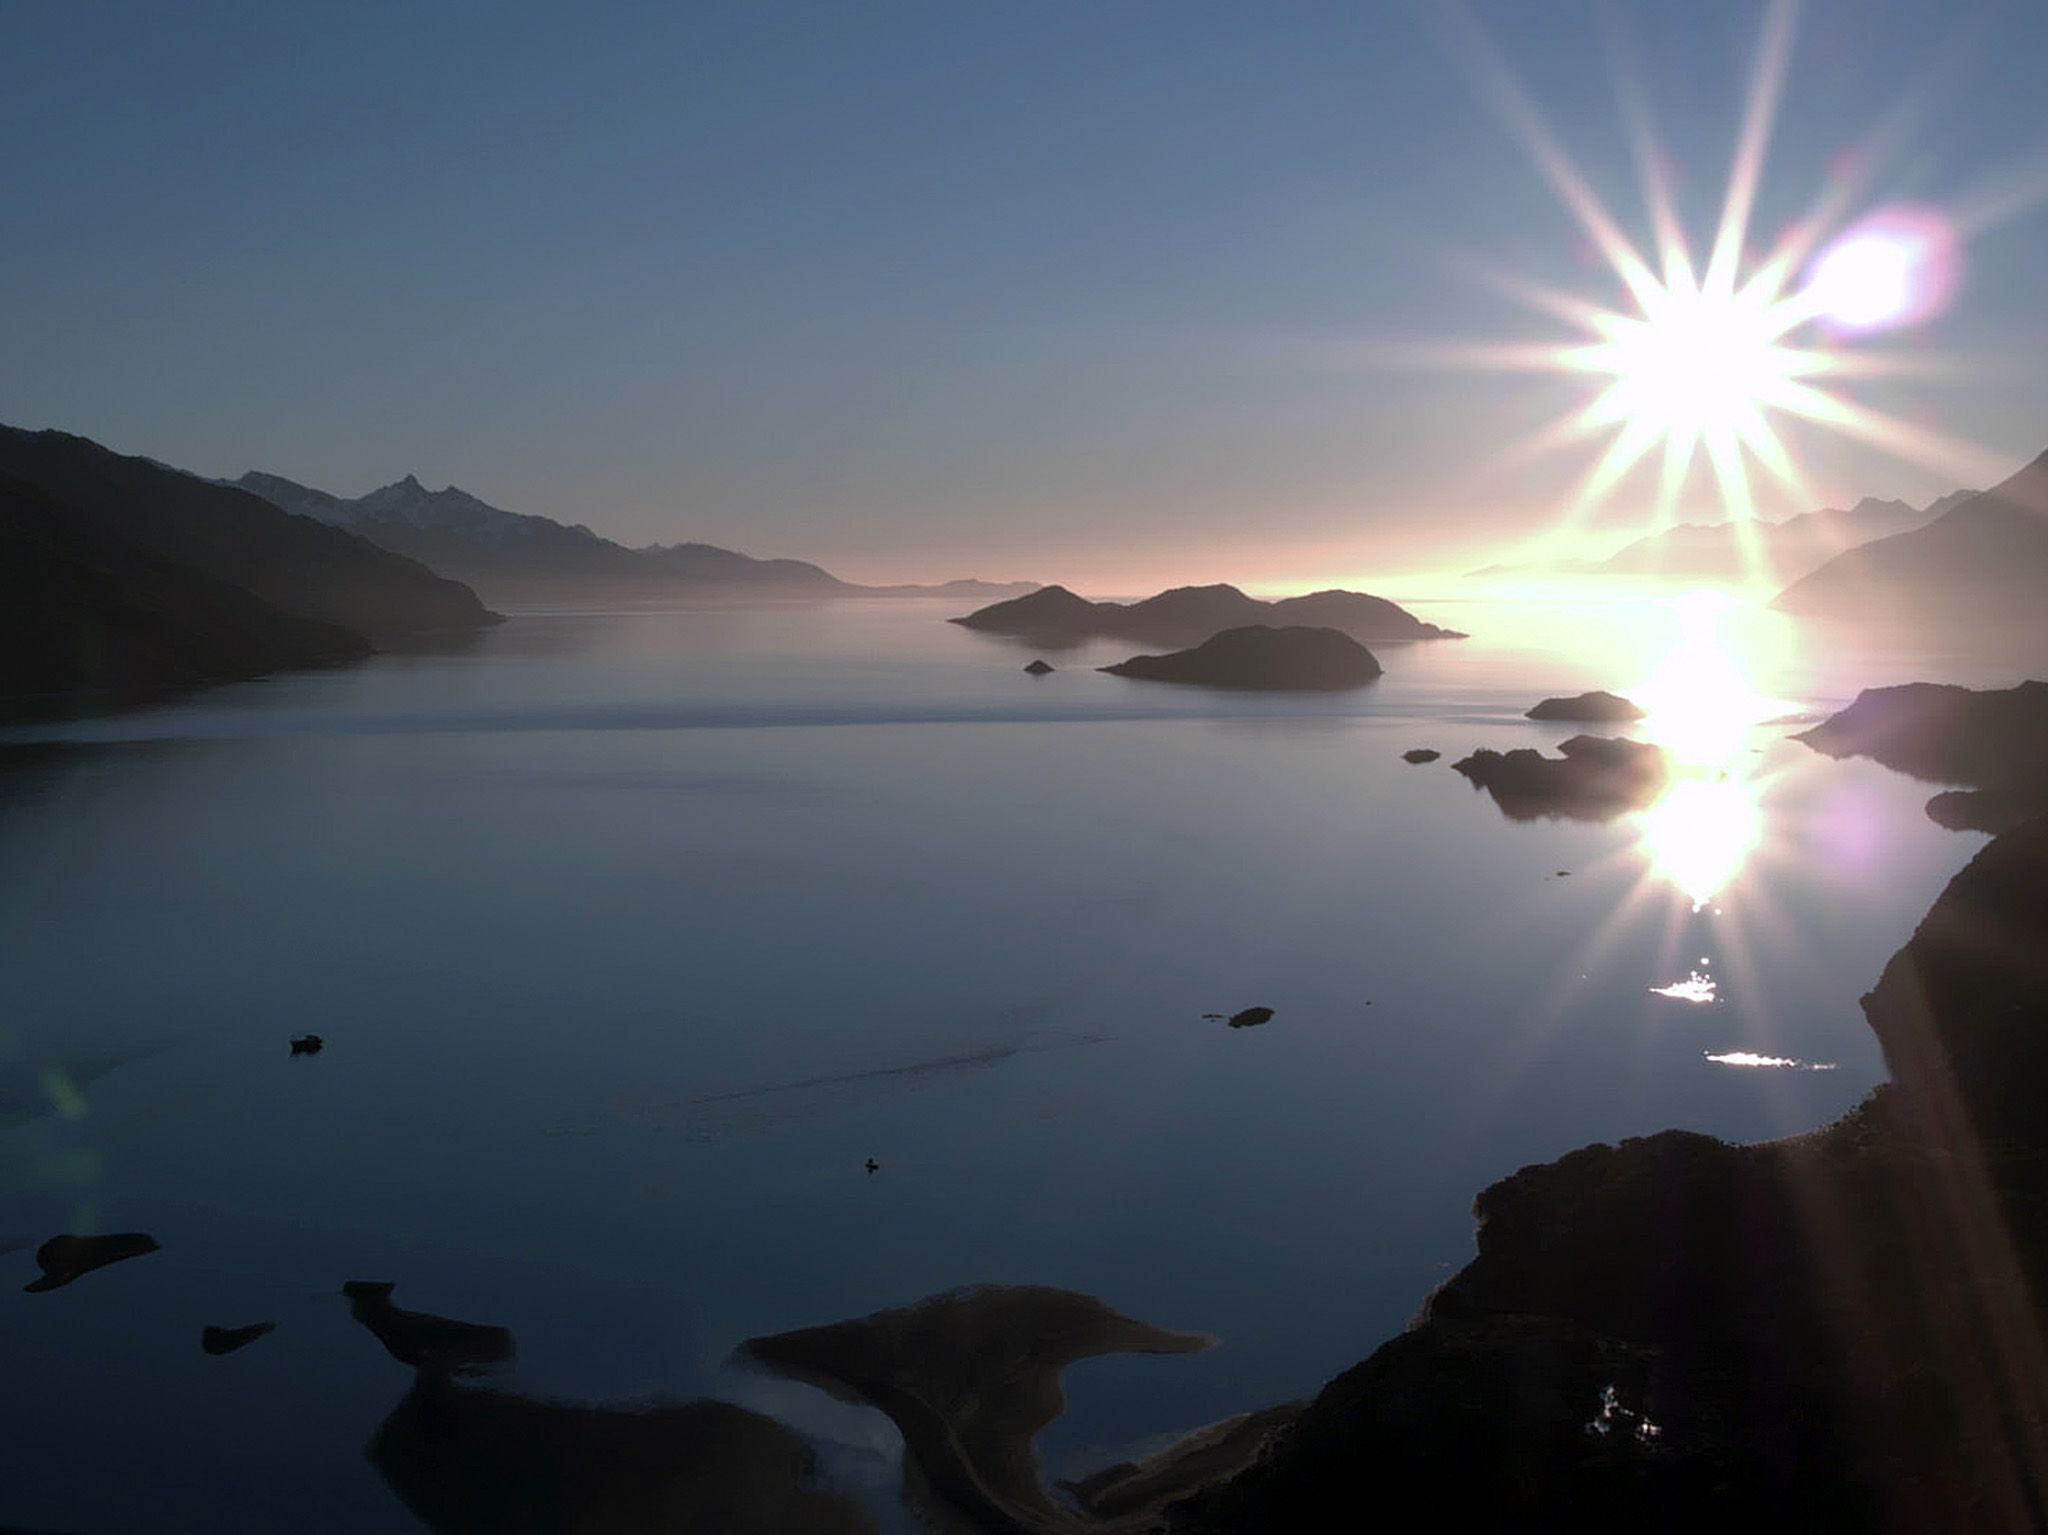 تييرا دل فويغو (أرض النار)، تشيلي: تشرق الشمس على ساحل... [Photo of the day - مايو 2018]